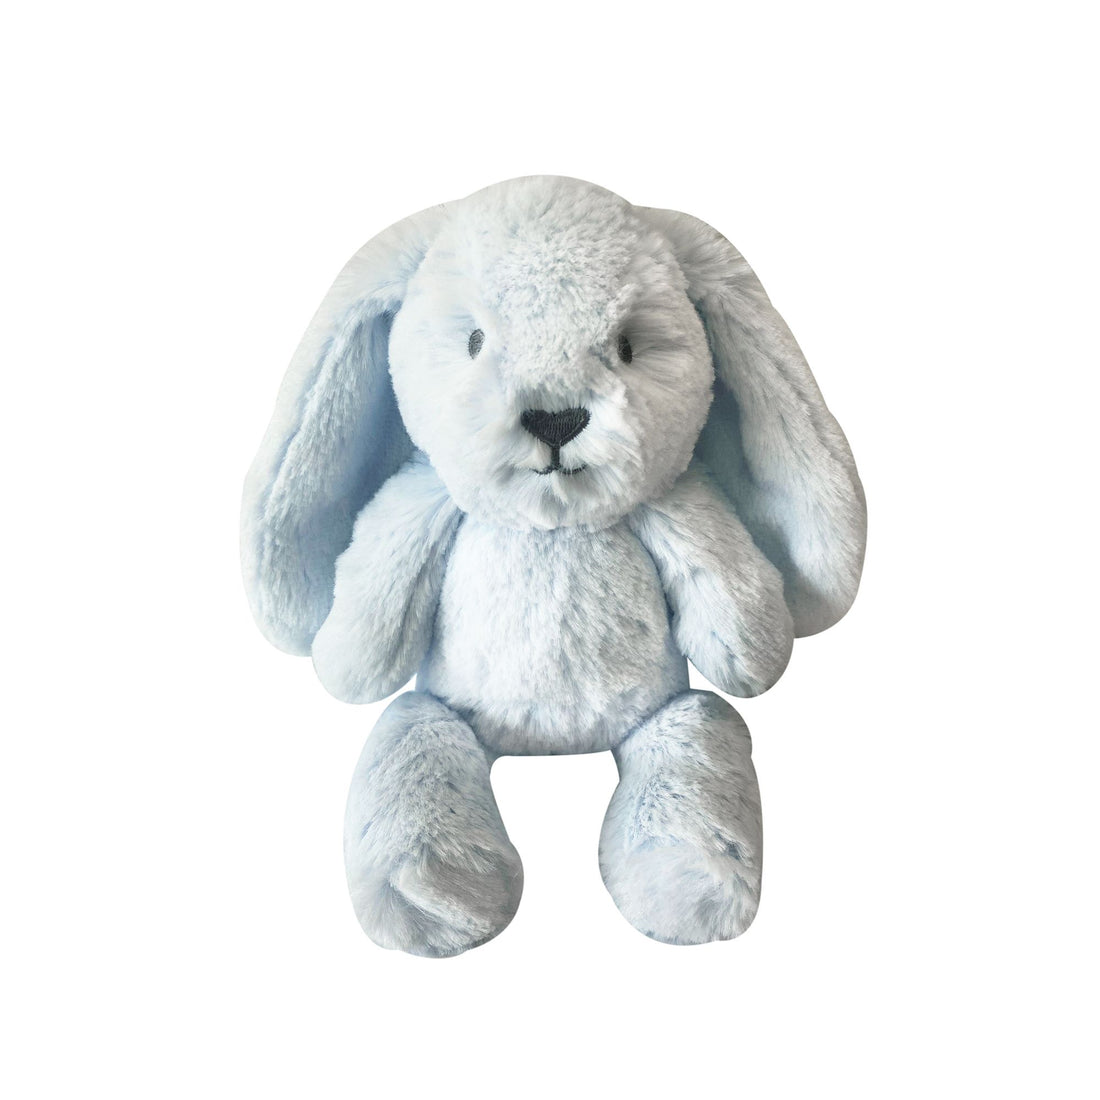 O.B. Designs Mini Bunny Soft Toy - Baby Blue